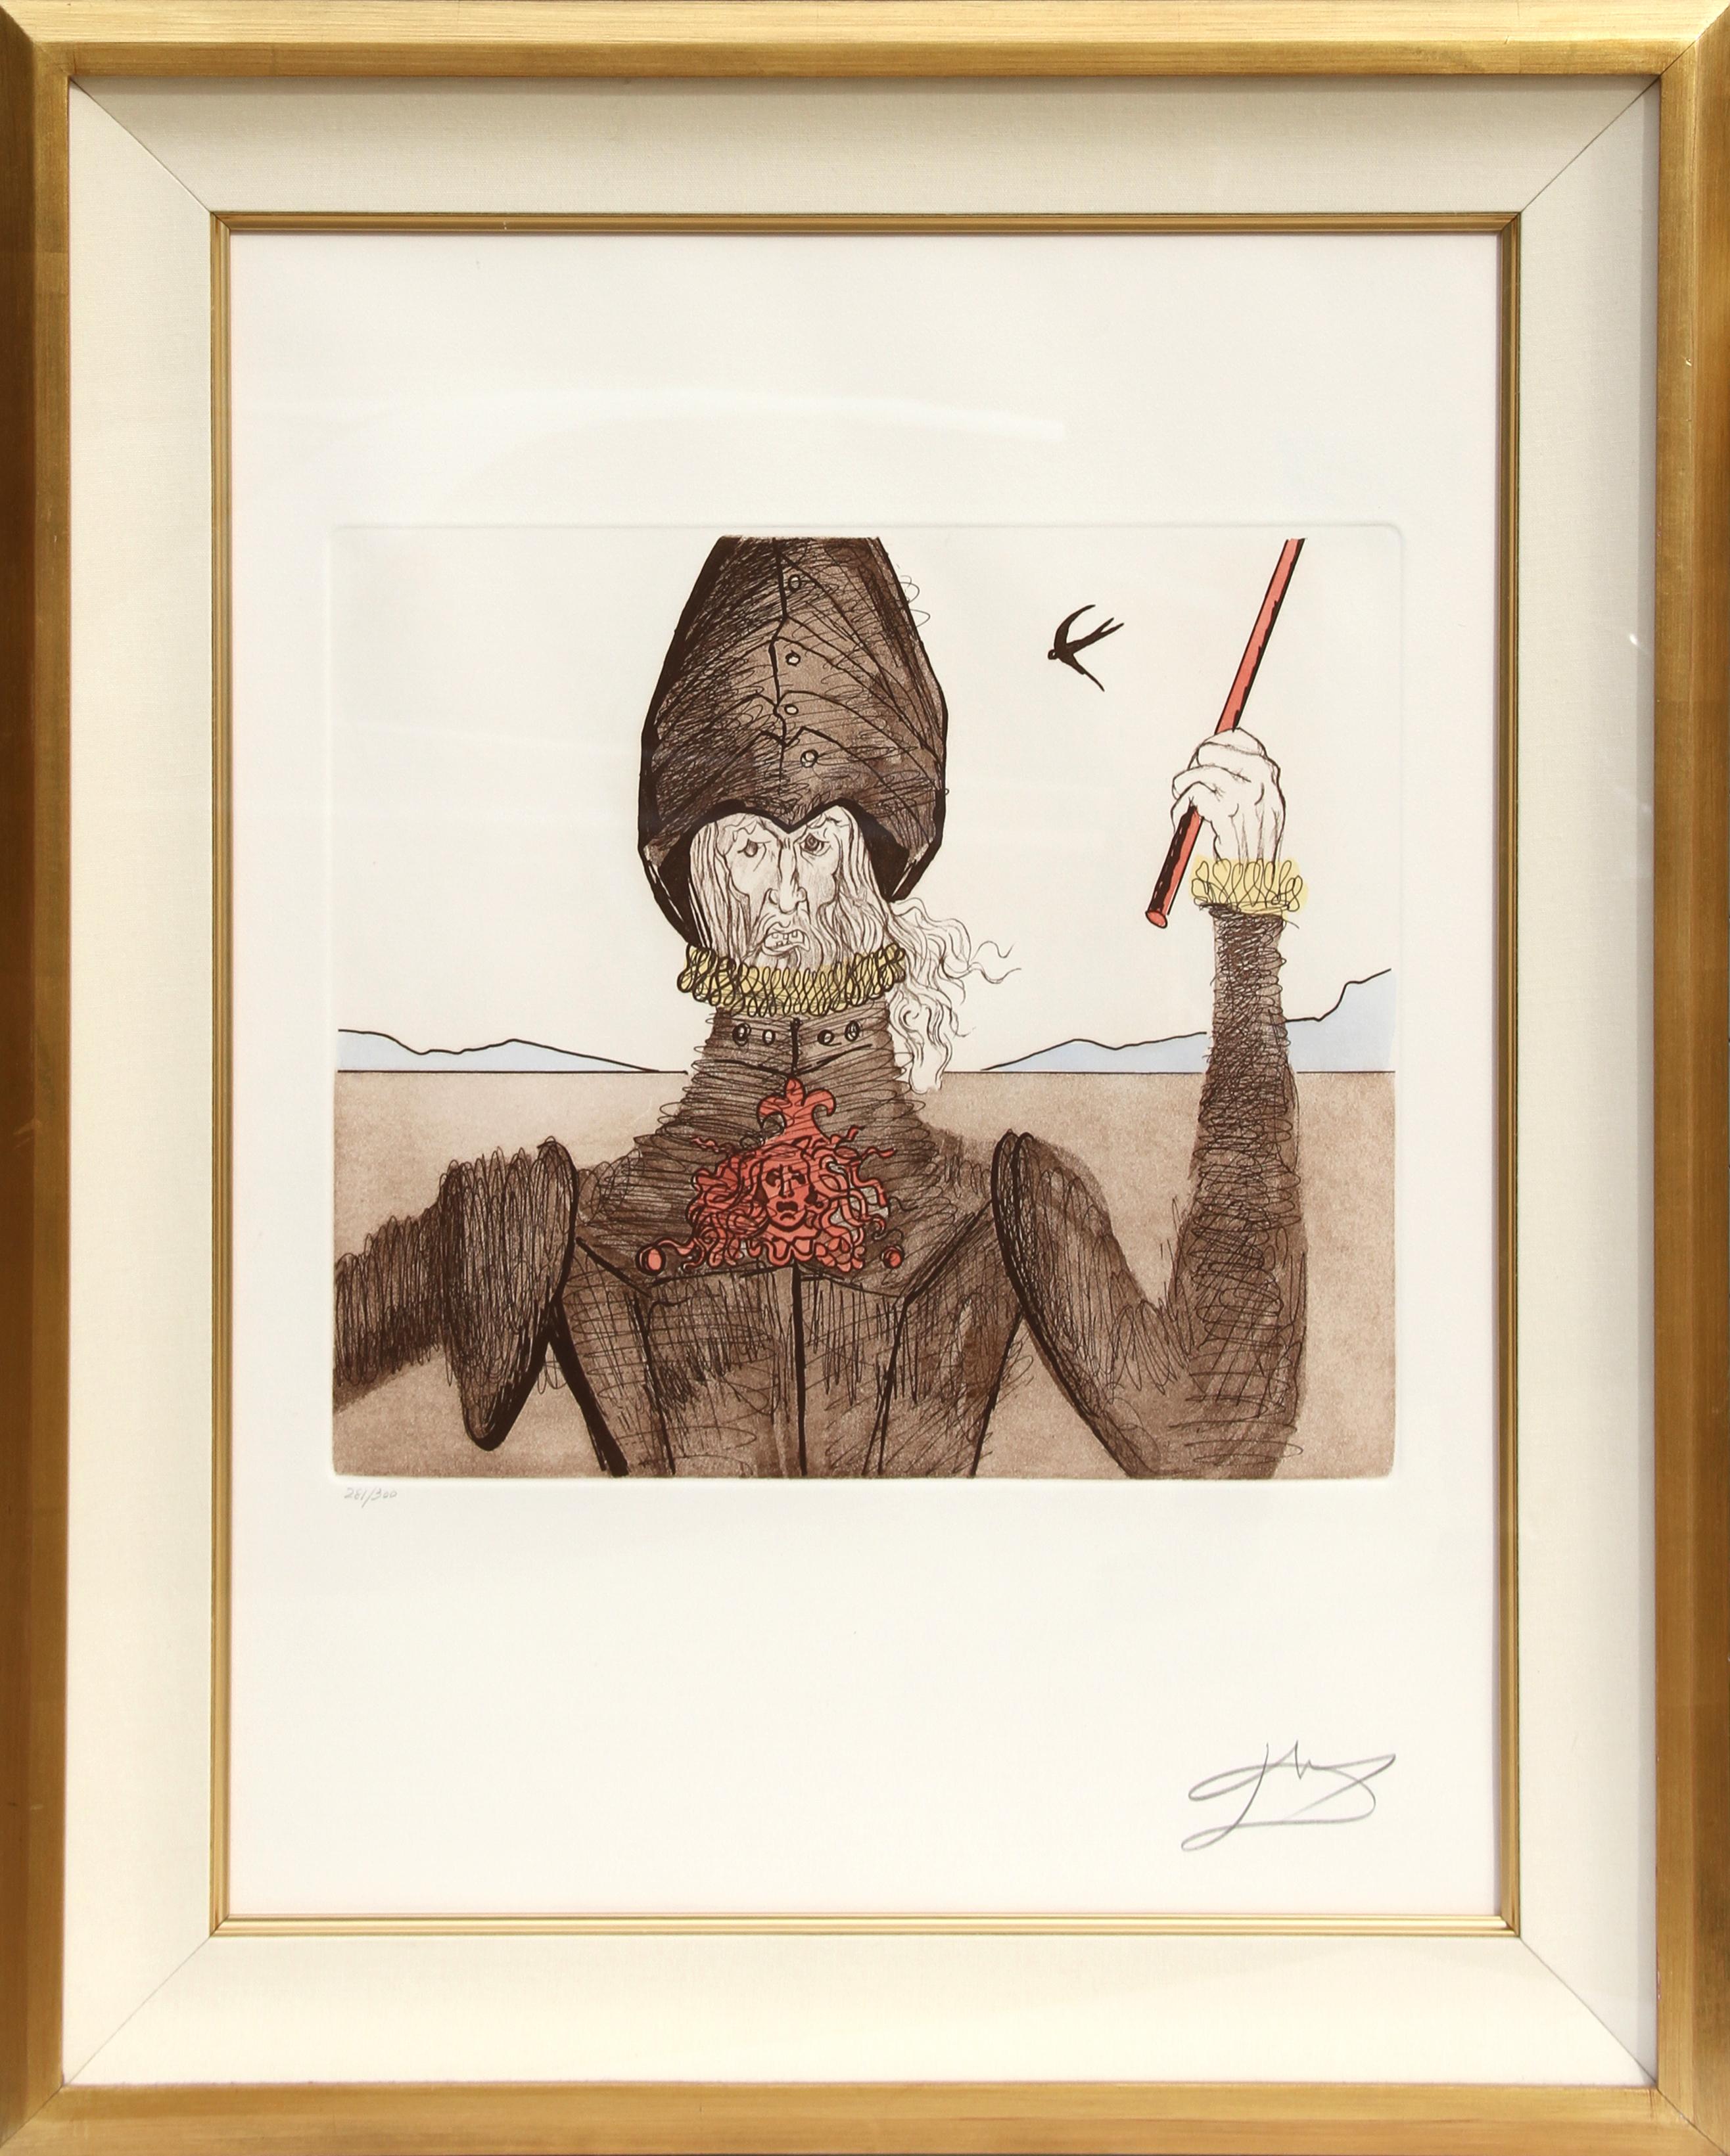 Salvador Dalí Portrait Print - The Dreamer from Historia de Don Quichotte de la Mancha